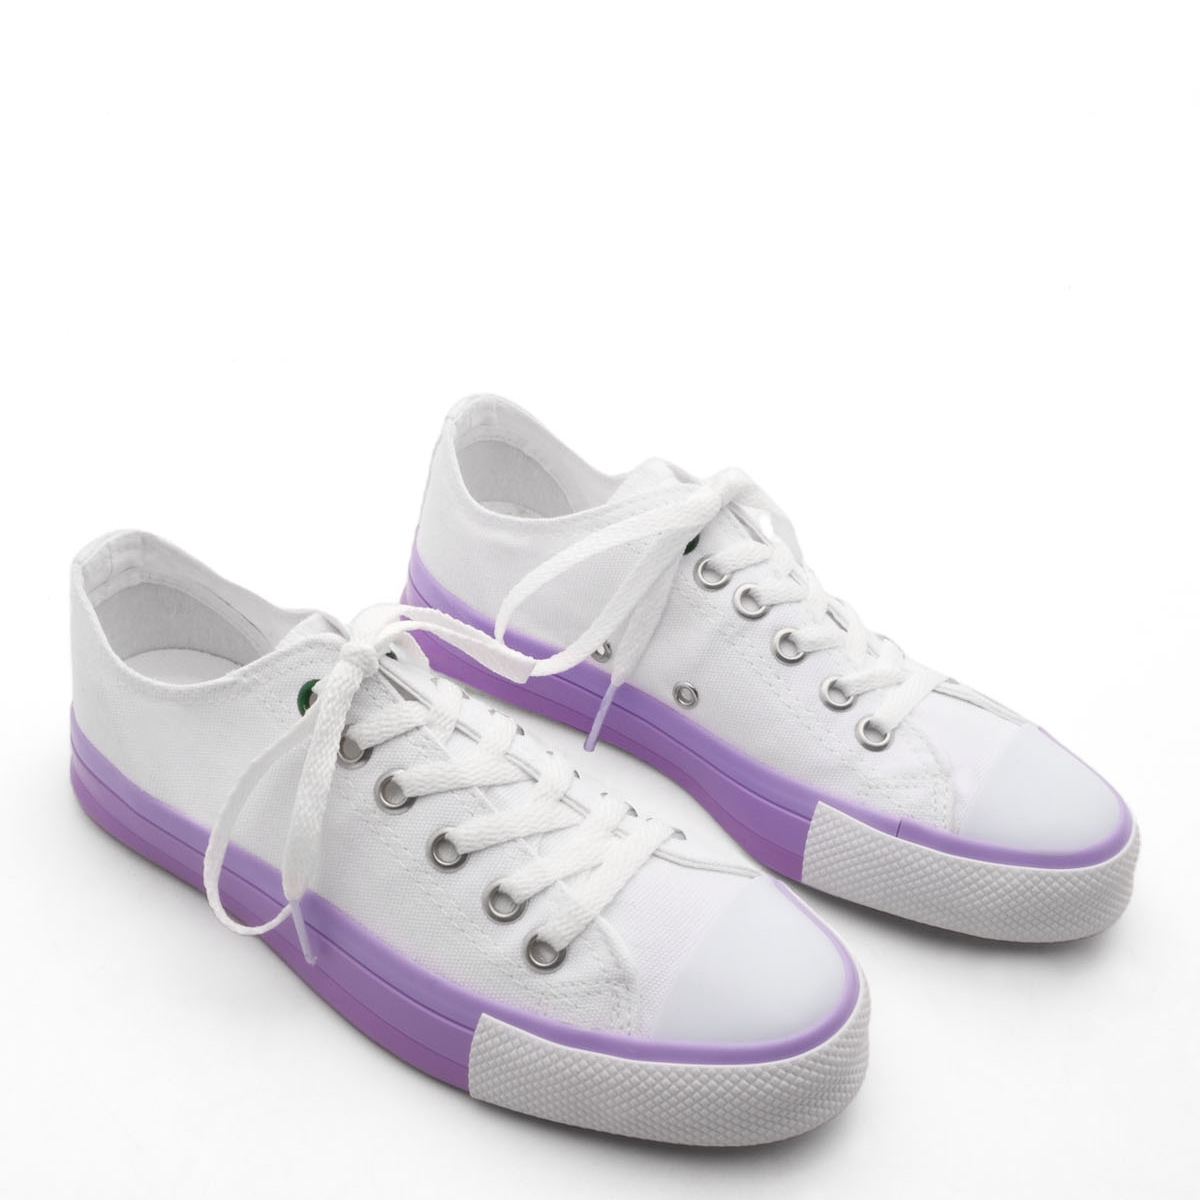 Flo Kadın Sneaker Keten Kumaş Bağcıklı Spor Ayakkabı Hesna Beyaz. 5